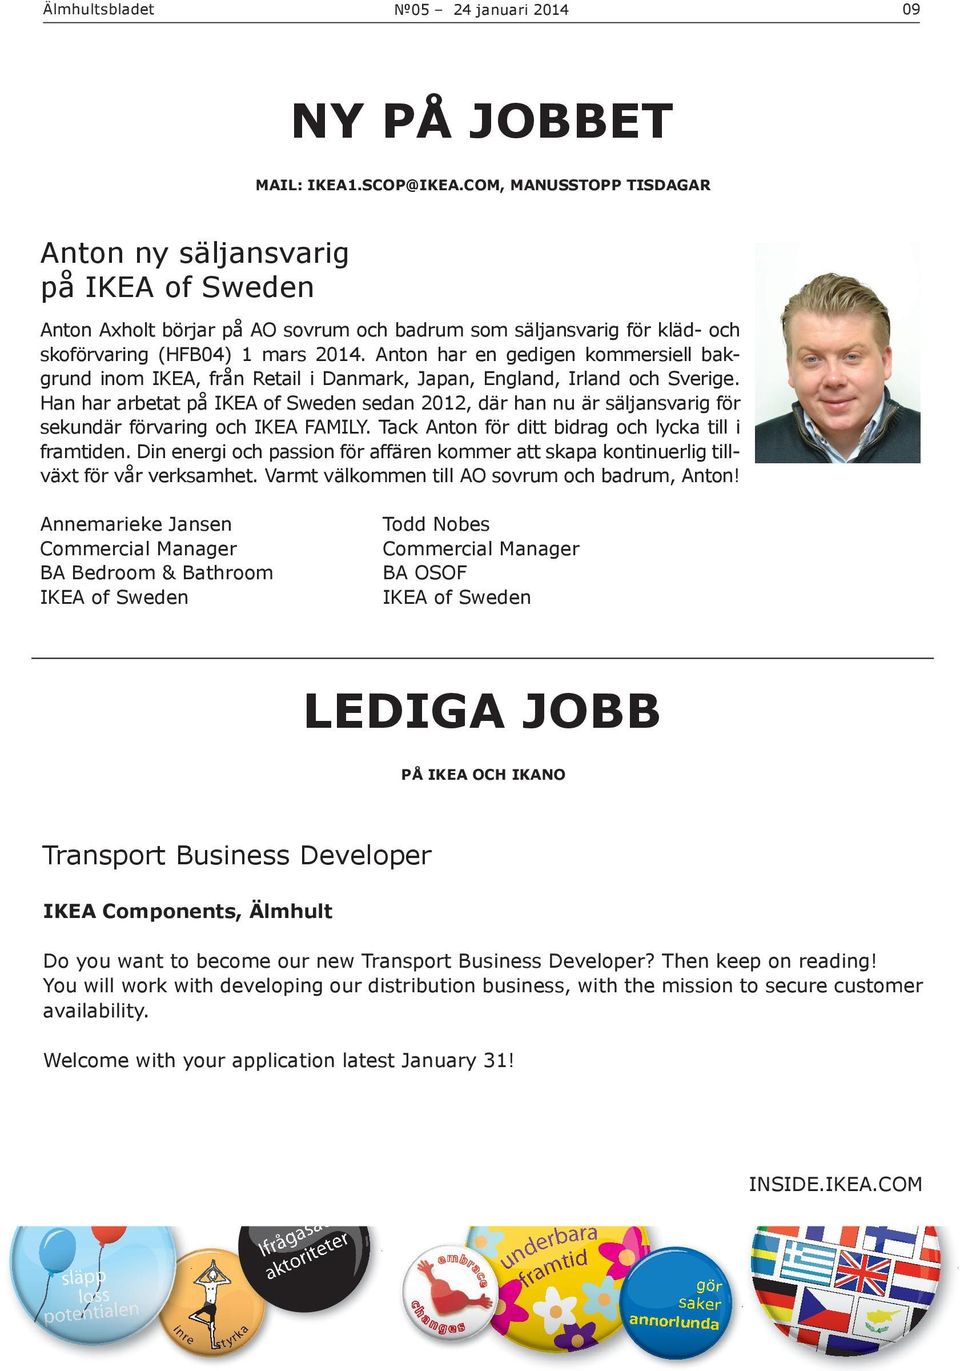 Anton har en gedigen kommersiell bakgrund inom IKEA, från Retail i Danmark, Japan, England, Irland och Sverige.